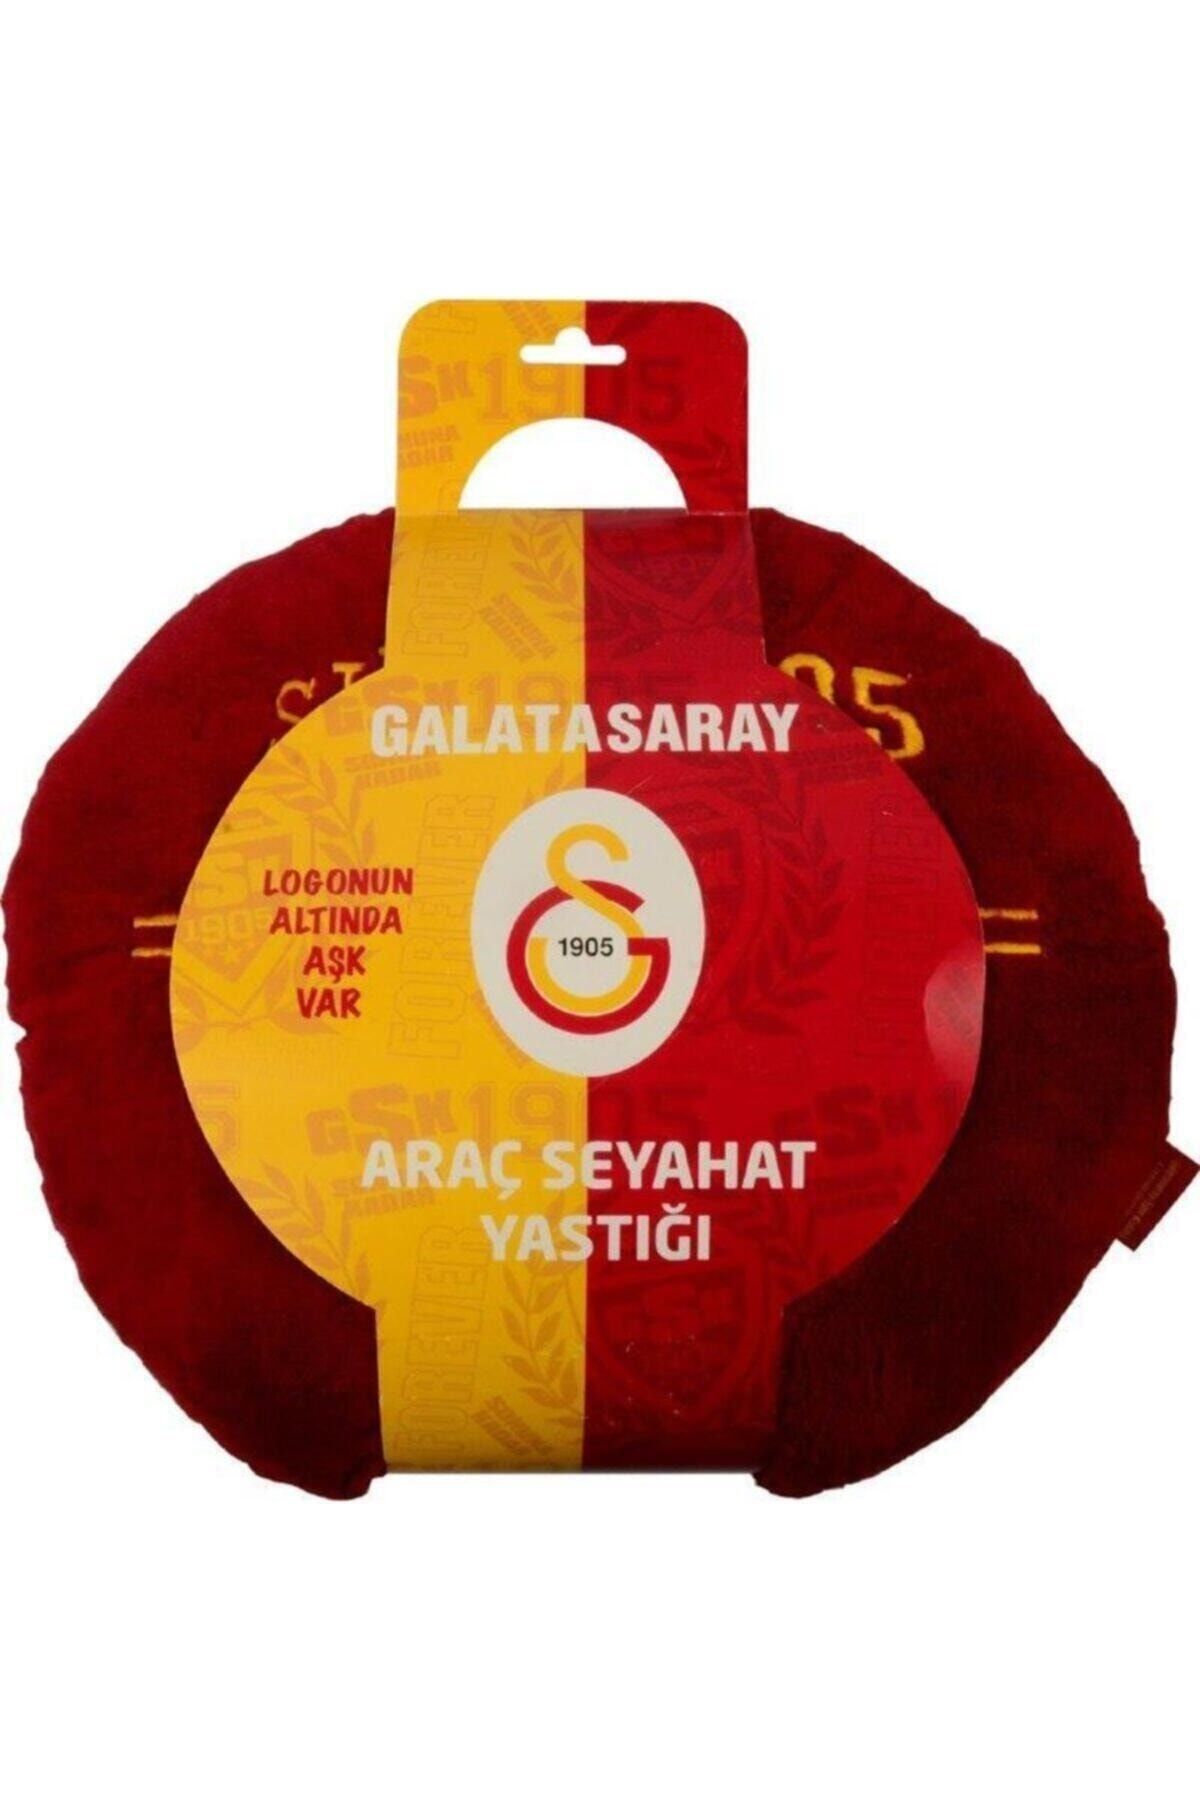 Galatasaray Galatasaray Orjinal Lisanslı Araç Seyahat Yastığı